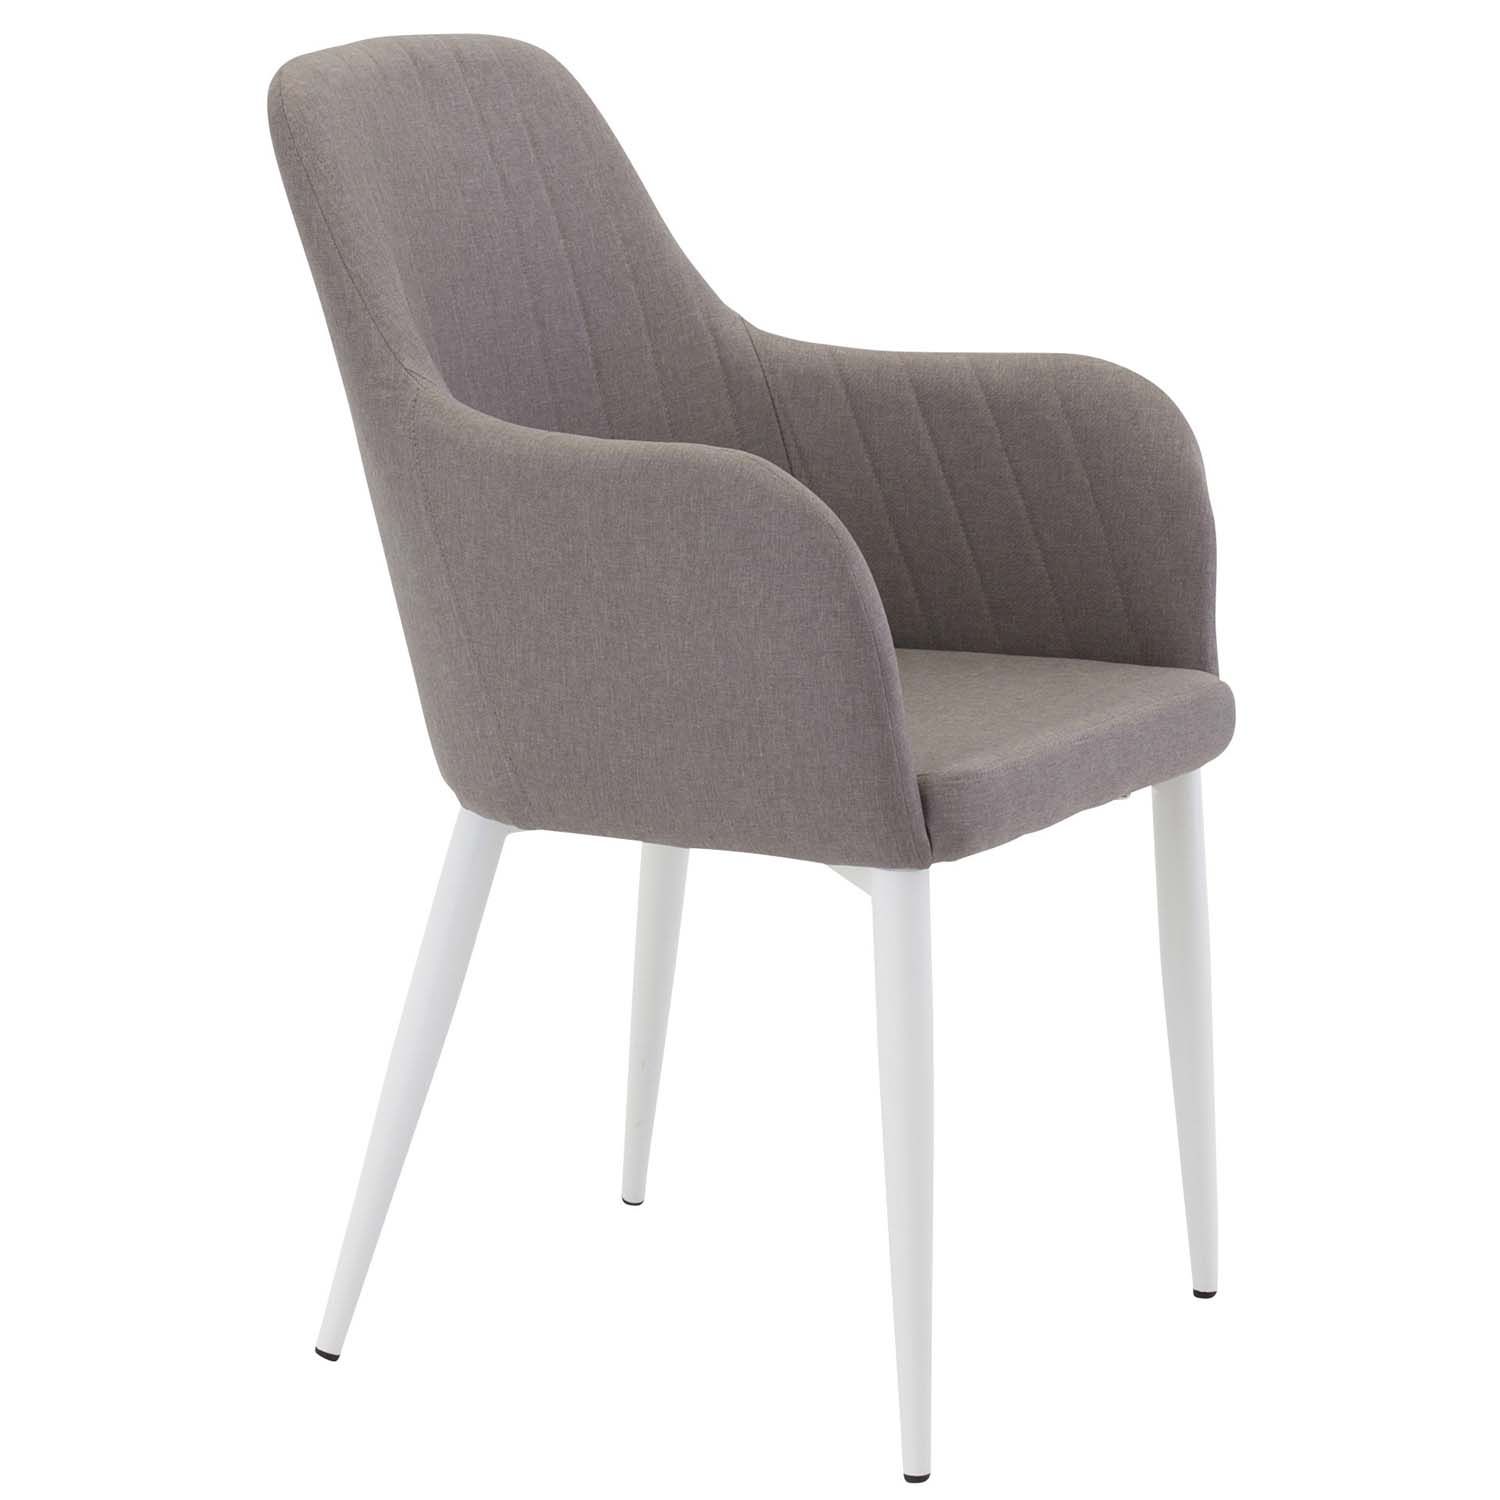 VENTURE DESIGN Comfort spisebordsstol, m. armlæn - grå polyester og hvid metal